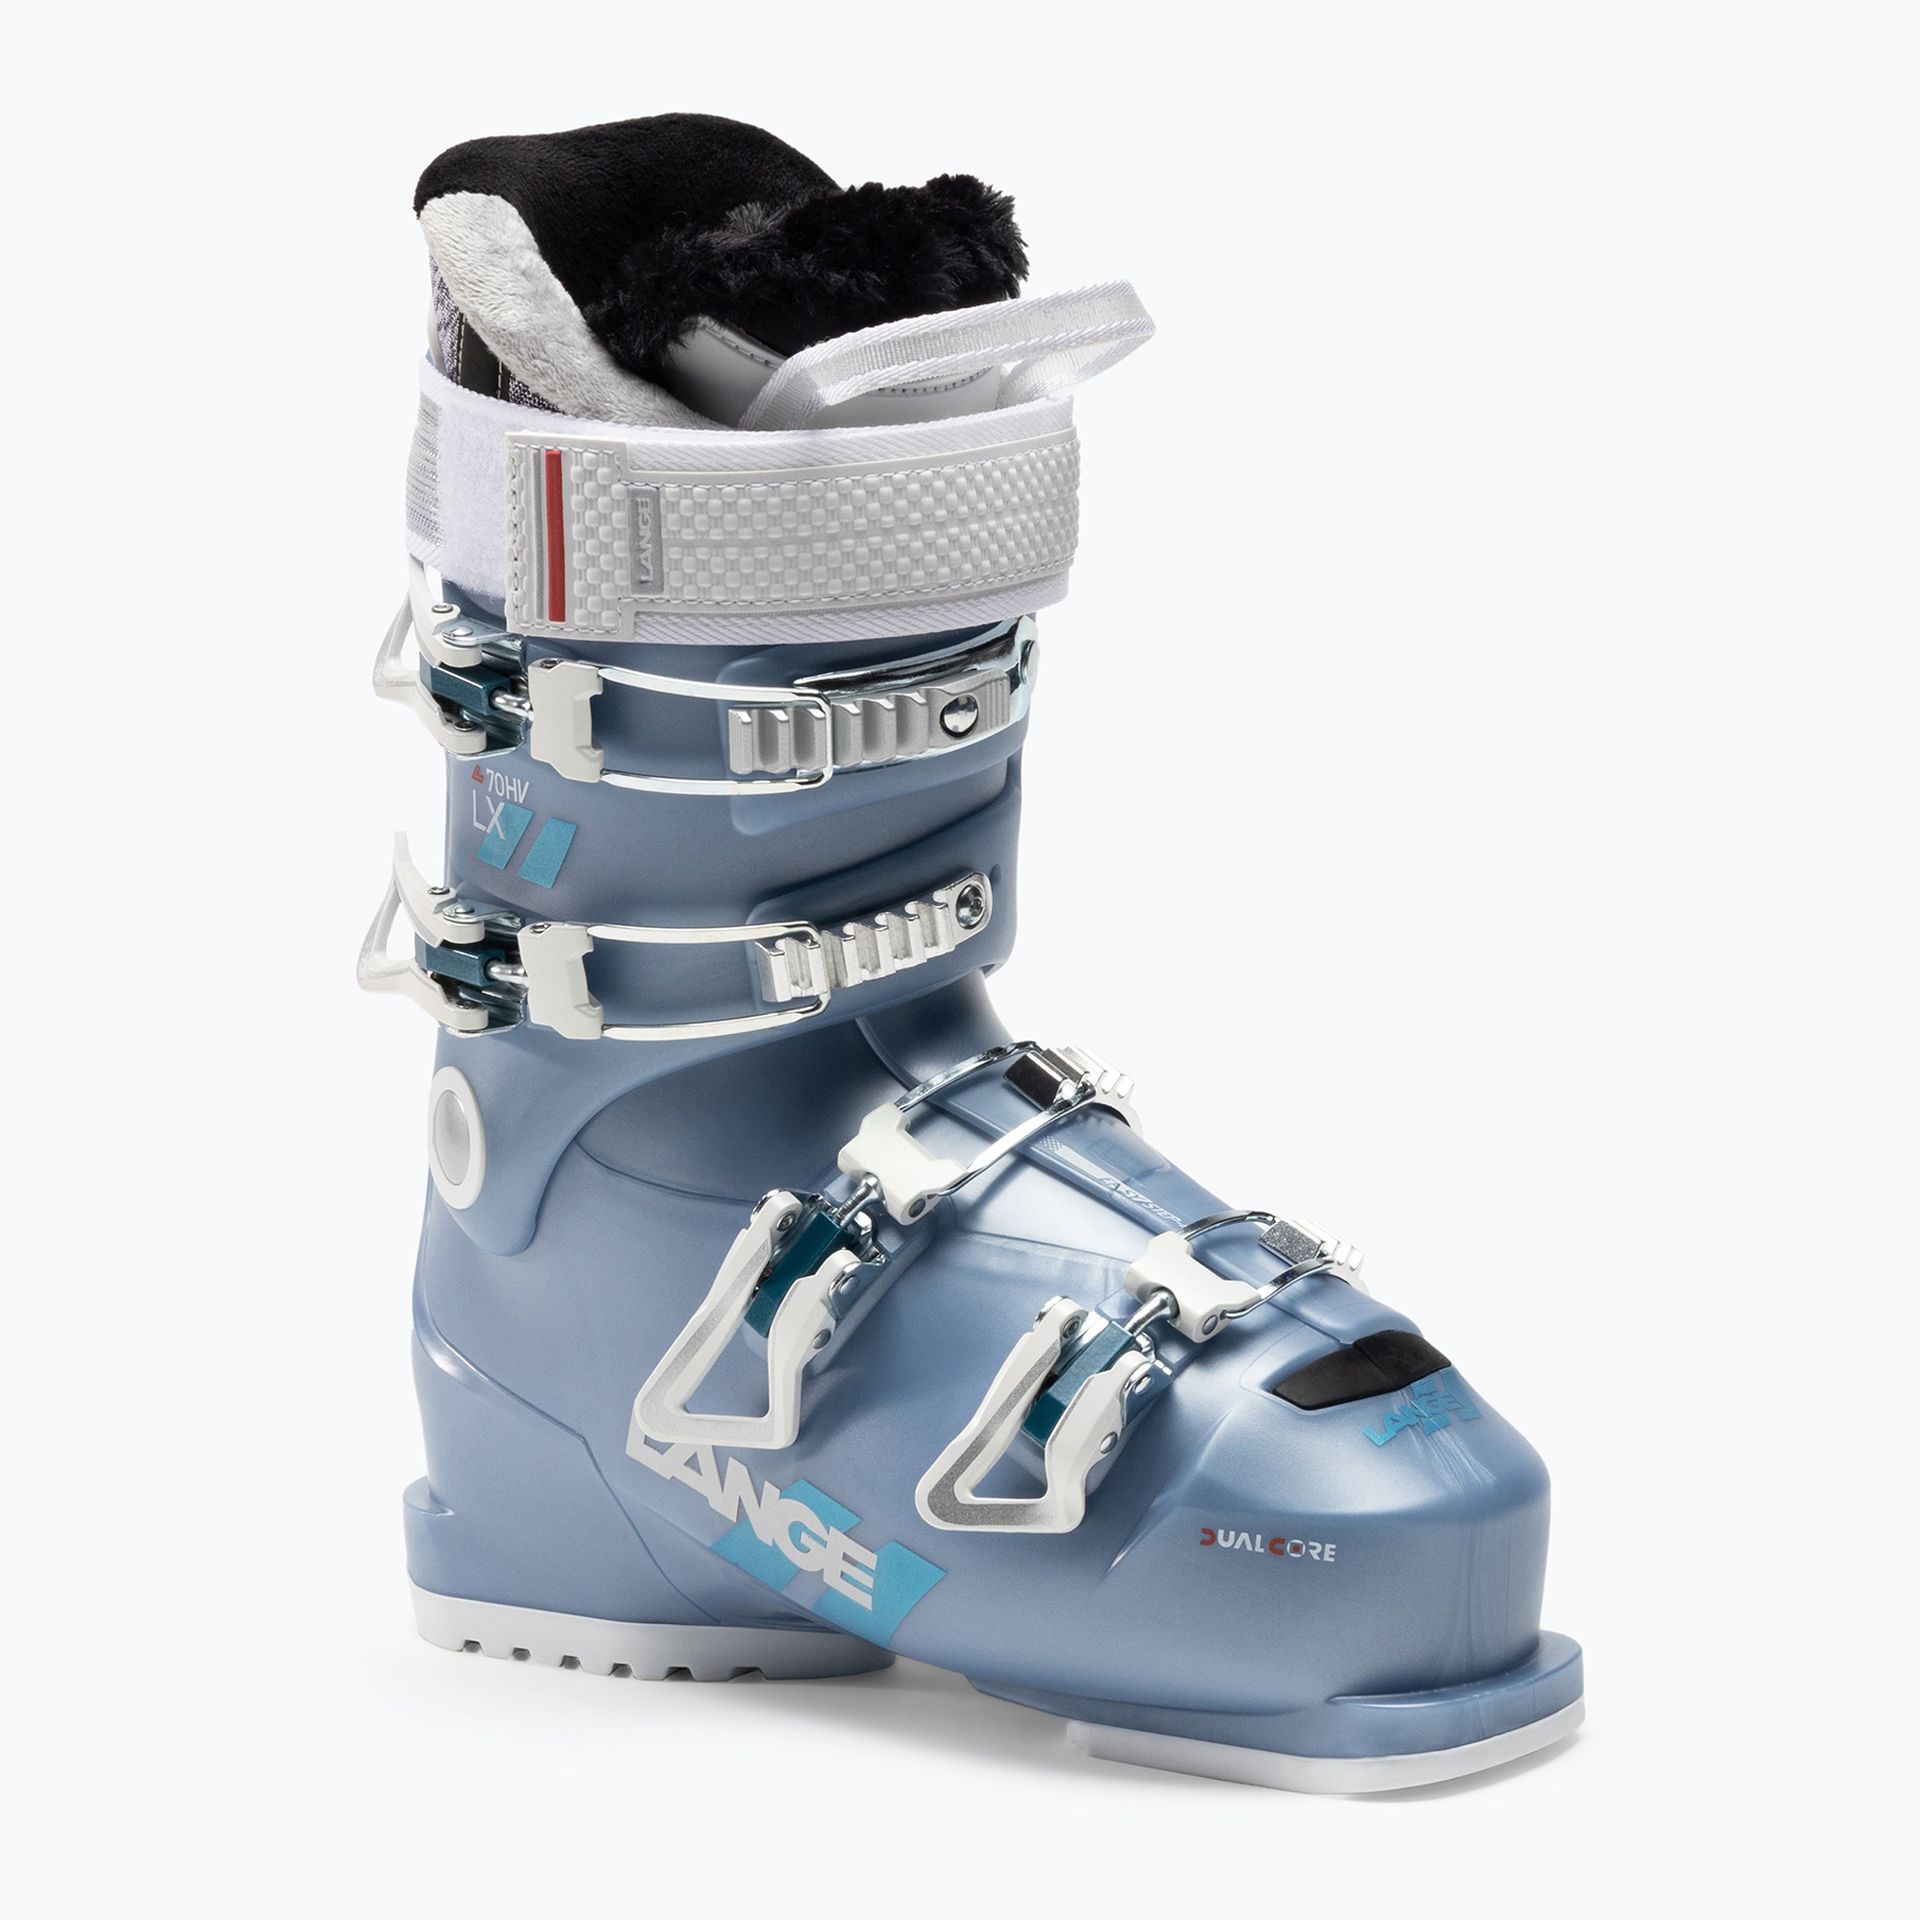 Buty narciarskie damskie Lange LX 70 W HV niebieskie LBL6260-235  25.5 cm